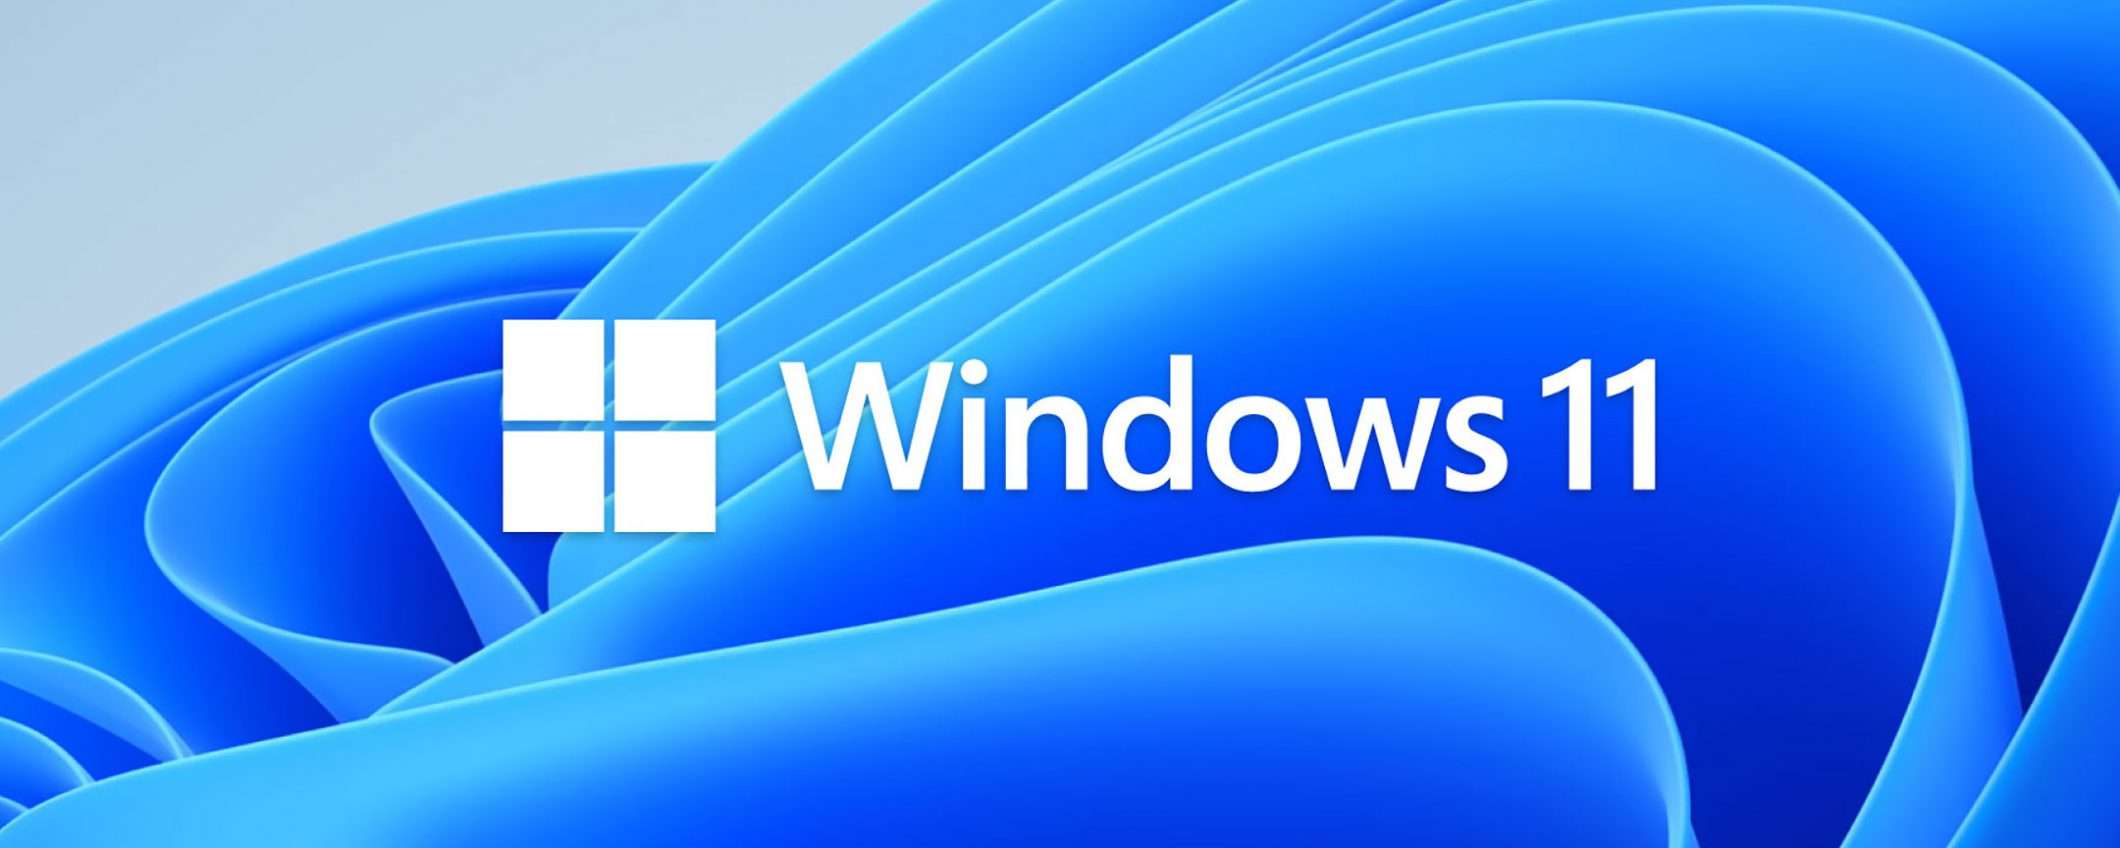 Windows 11 ufficiale: evoluzione, non rivoluzione